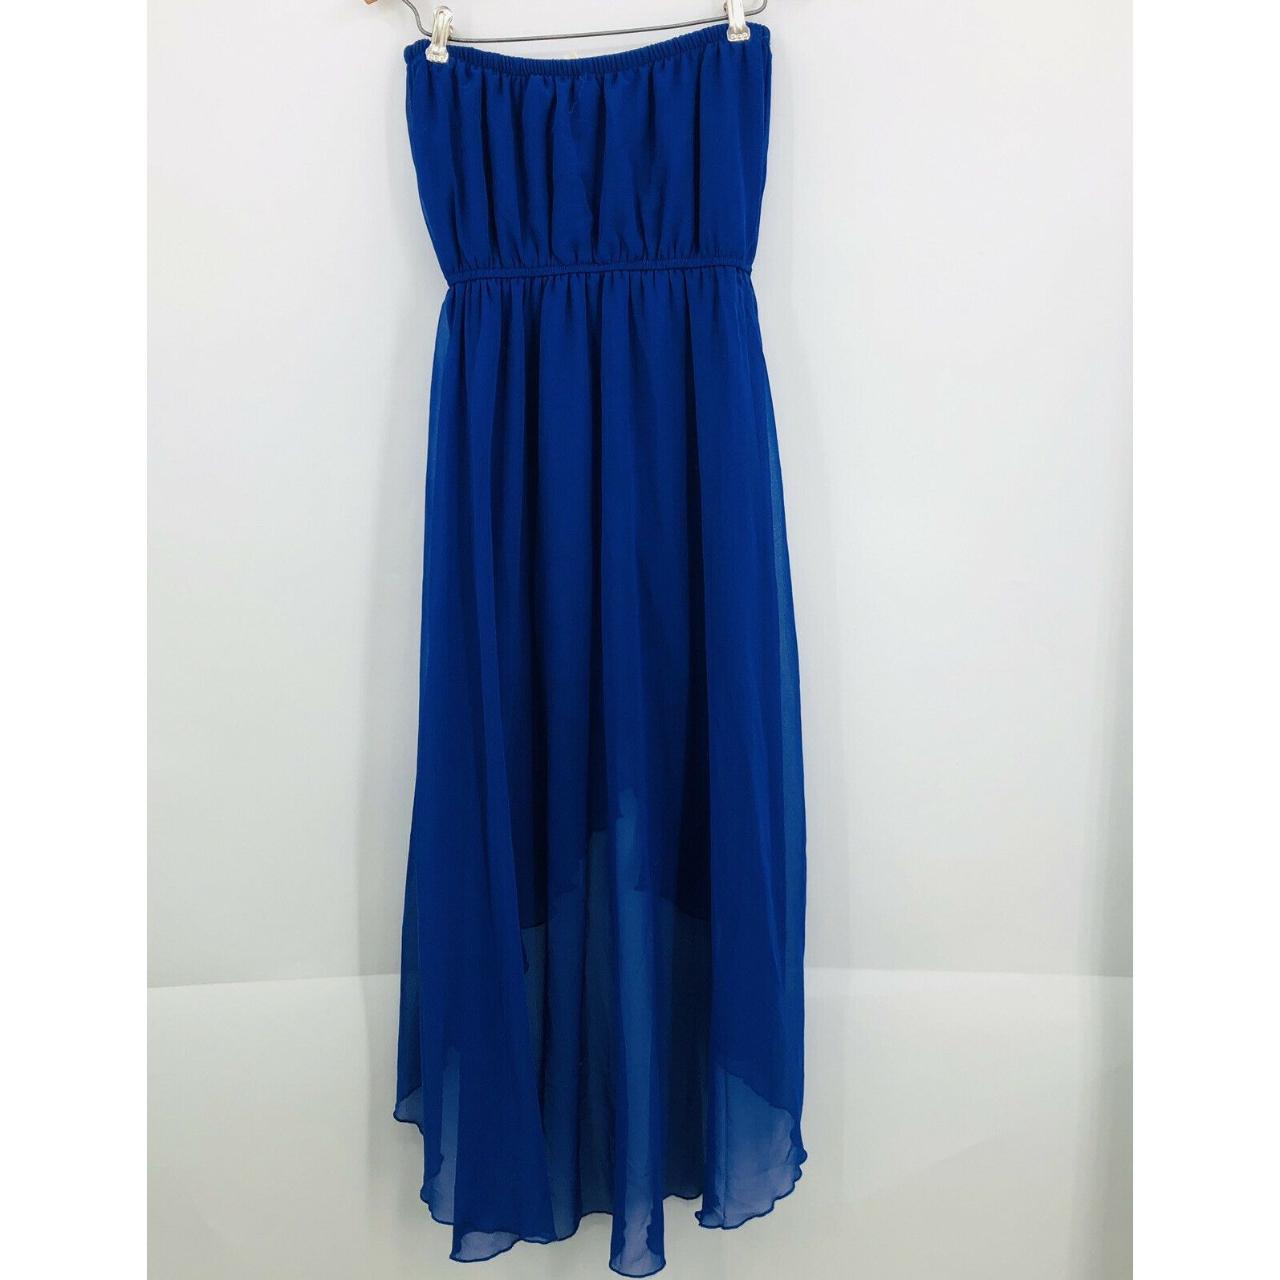 Product Image 2 - PARADISE Strapless Blue Dress 

Hi